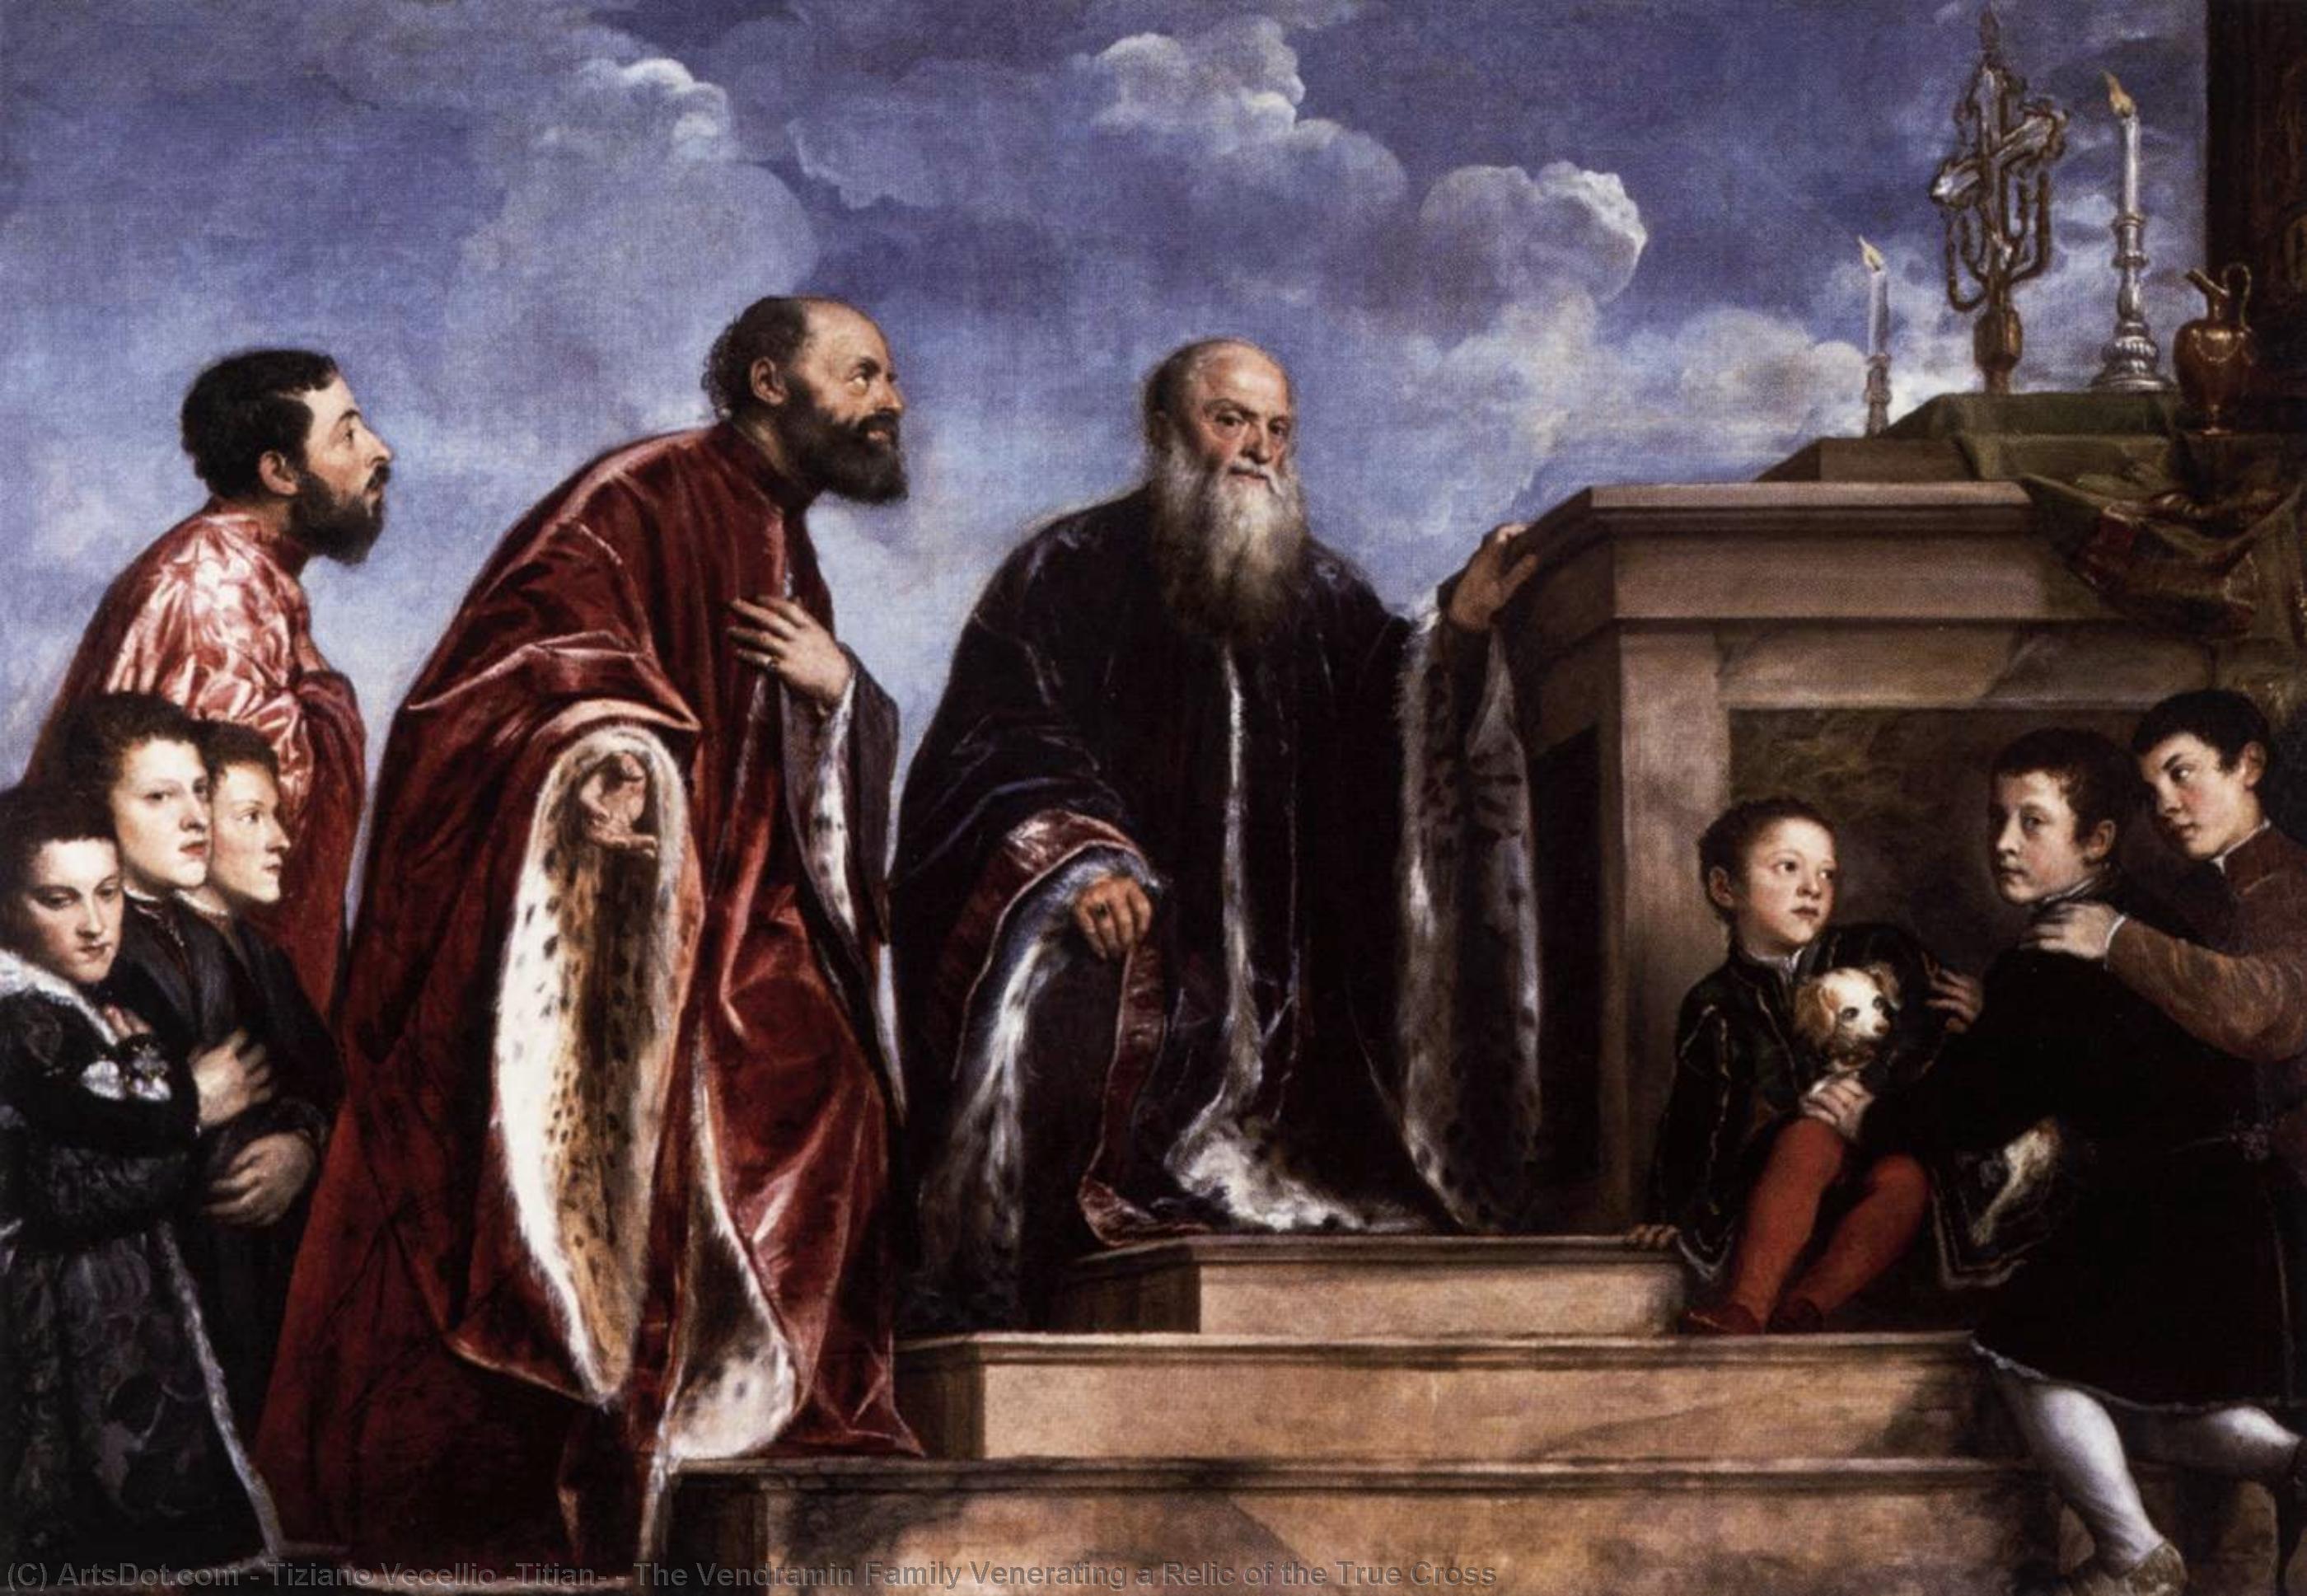 Wikioo.org - Die Enzyklopädie bildender Kunst - Malerei, Kunstwerk von Tiziano Vecellio (Titian) - die familie vendramin, die ein relikt des wahren kreuzes verehrt